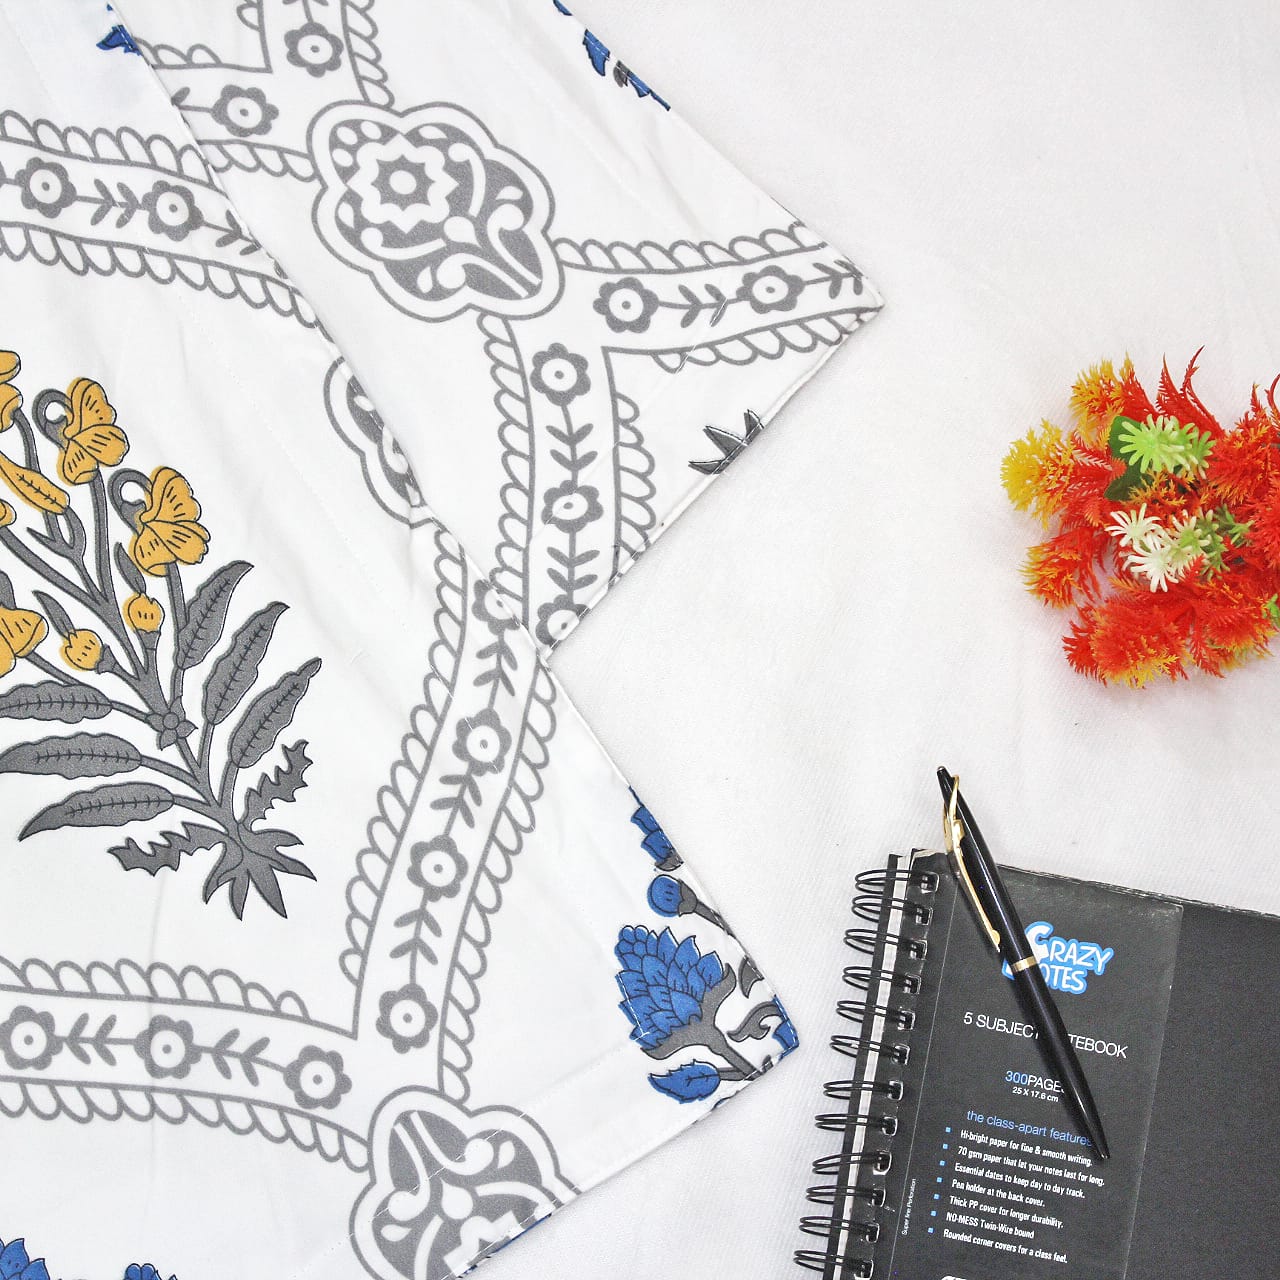 Blue Festive Collection Floral Dohar Bedsheet Set (4 Pc) online in India